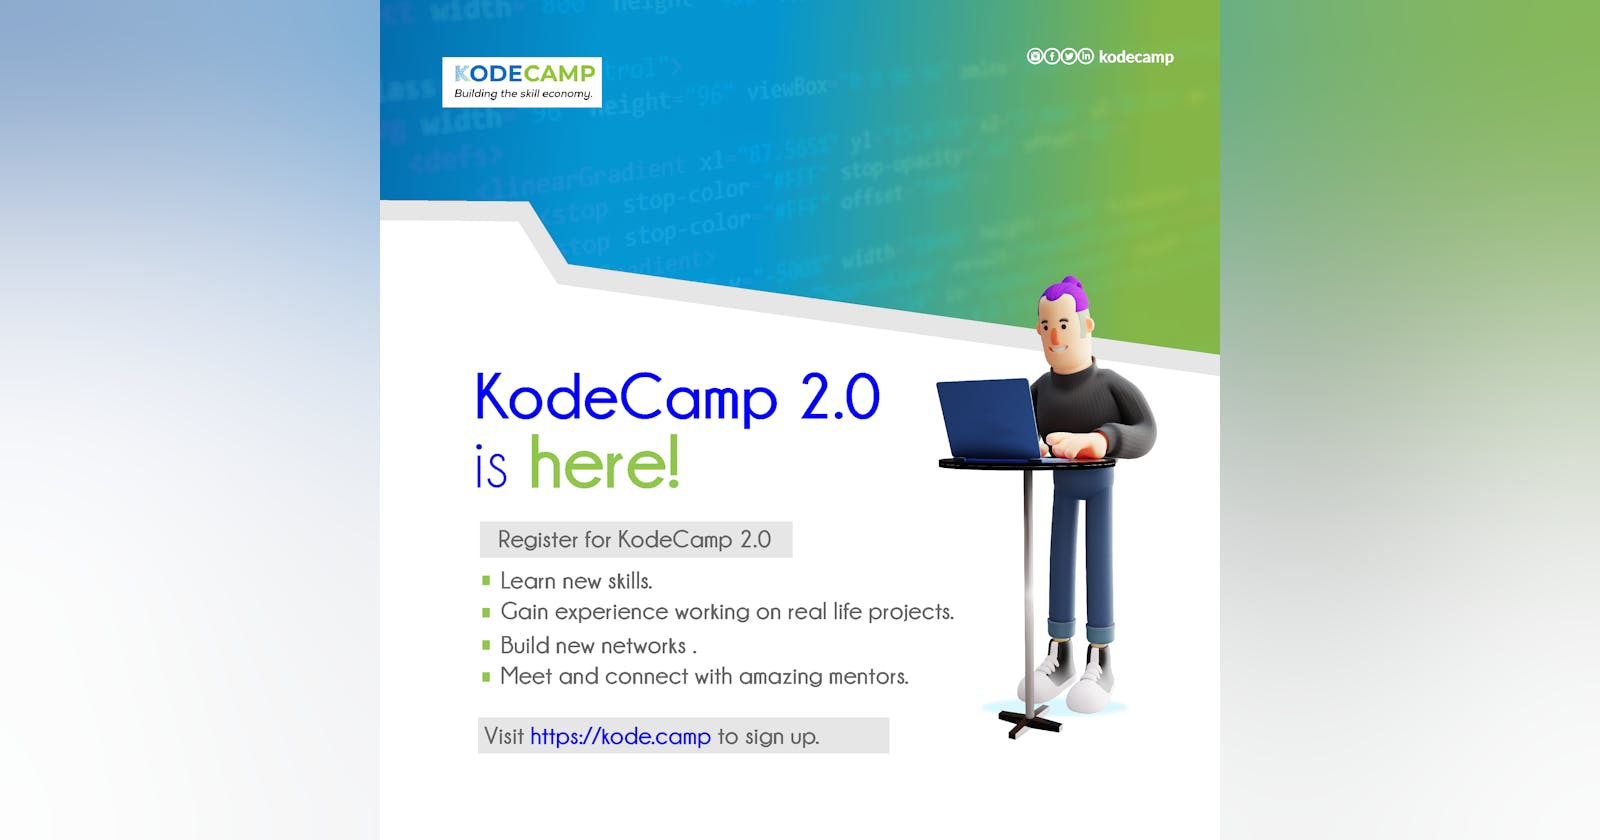 Kodecamp 2.0